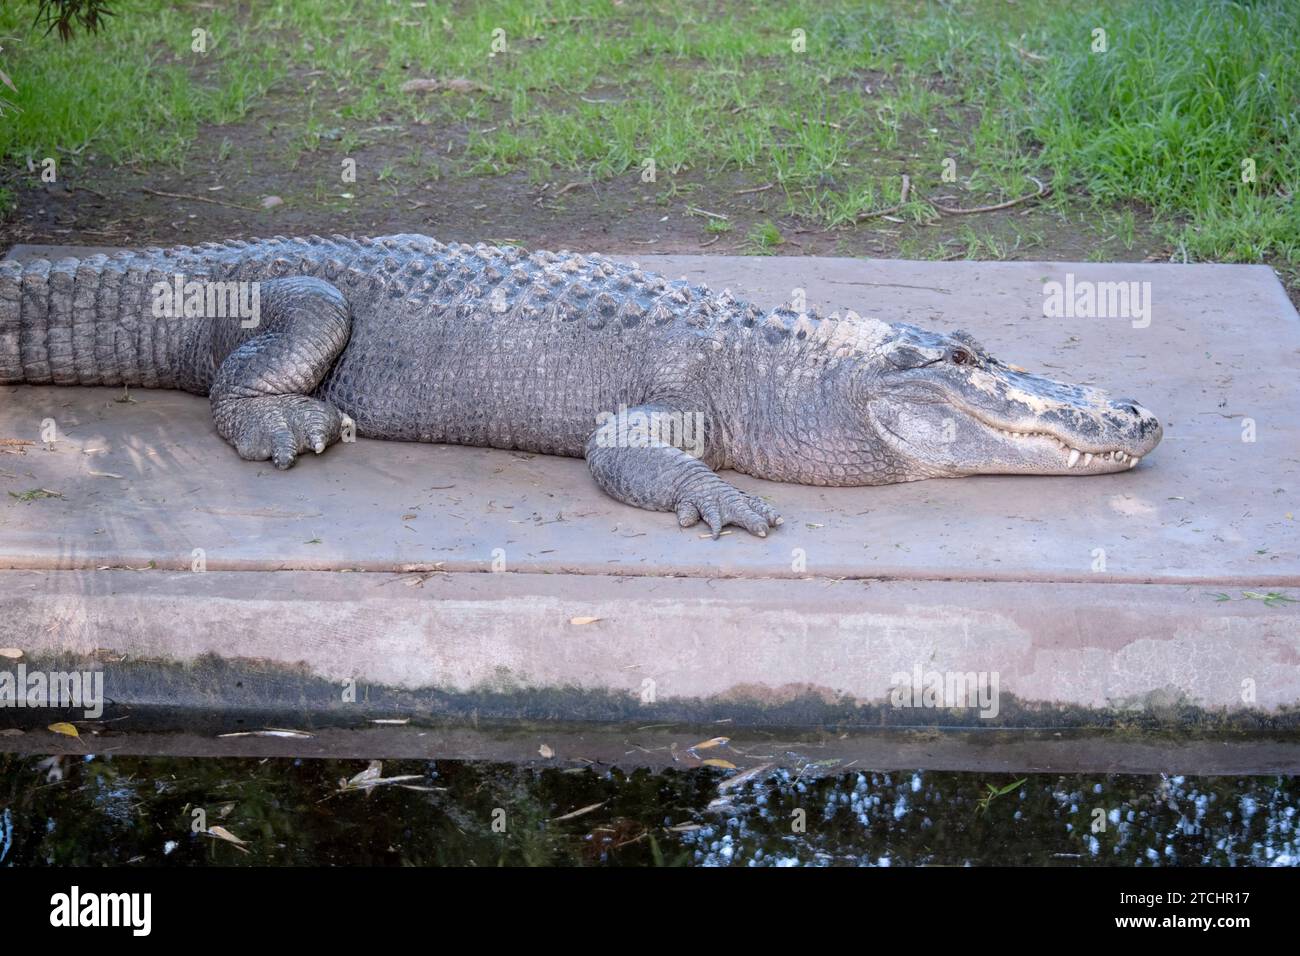 Les alligators ont un long museau arrondi qui a des narines orientées vers le haut à la fin Banque D'Images